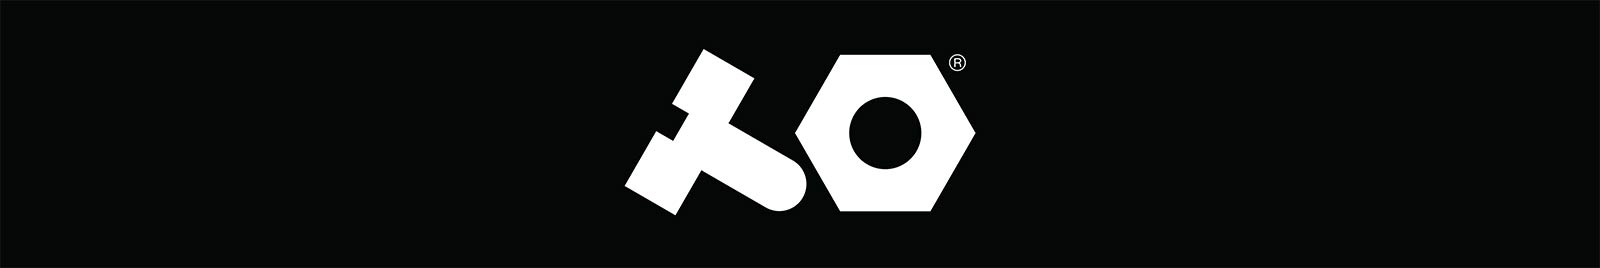 Teenage Engineering White Logo on Black Background